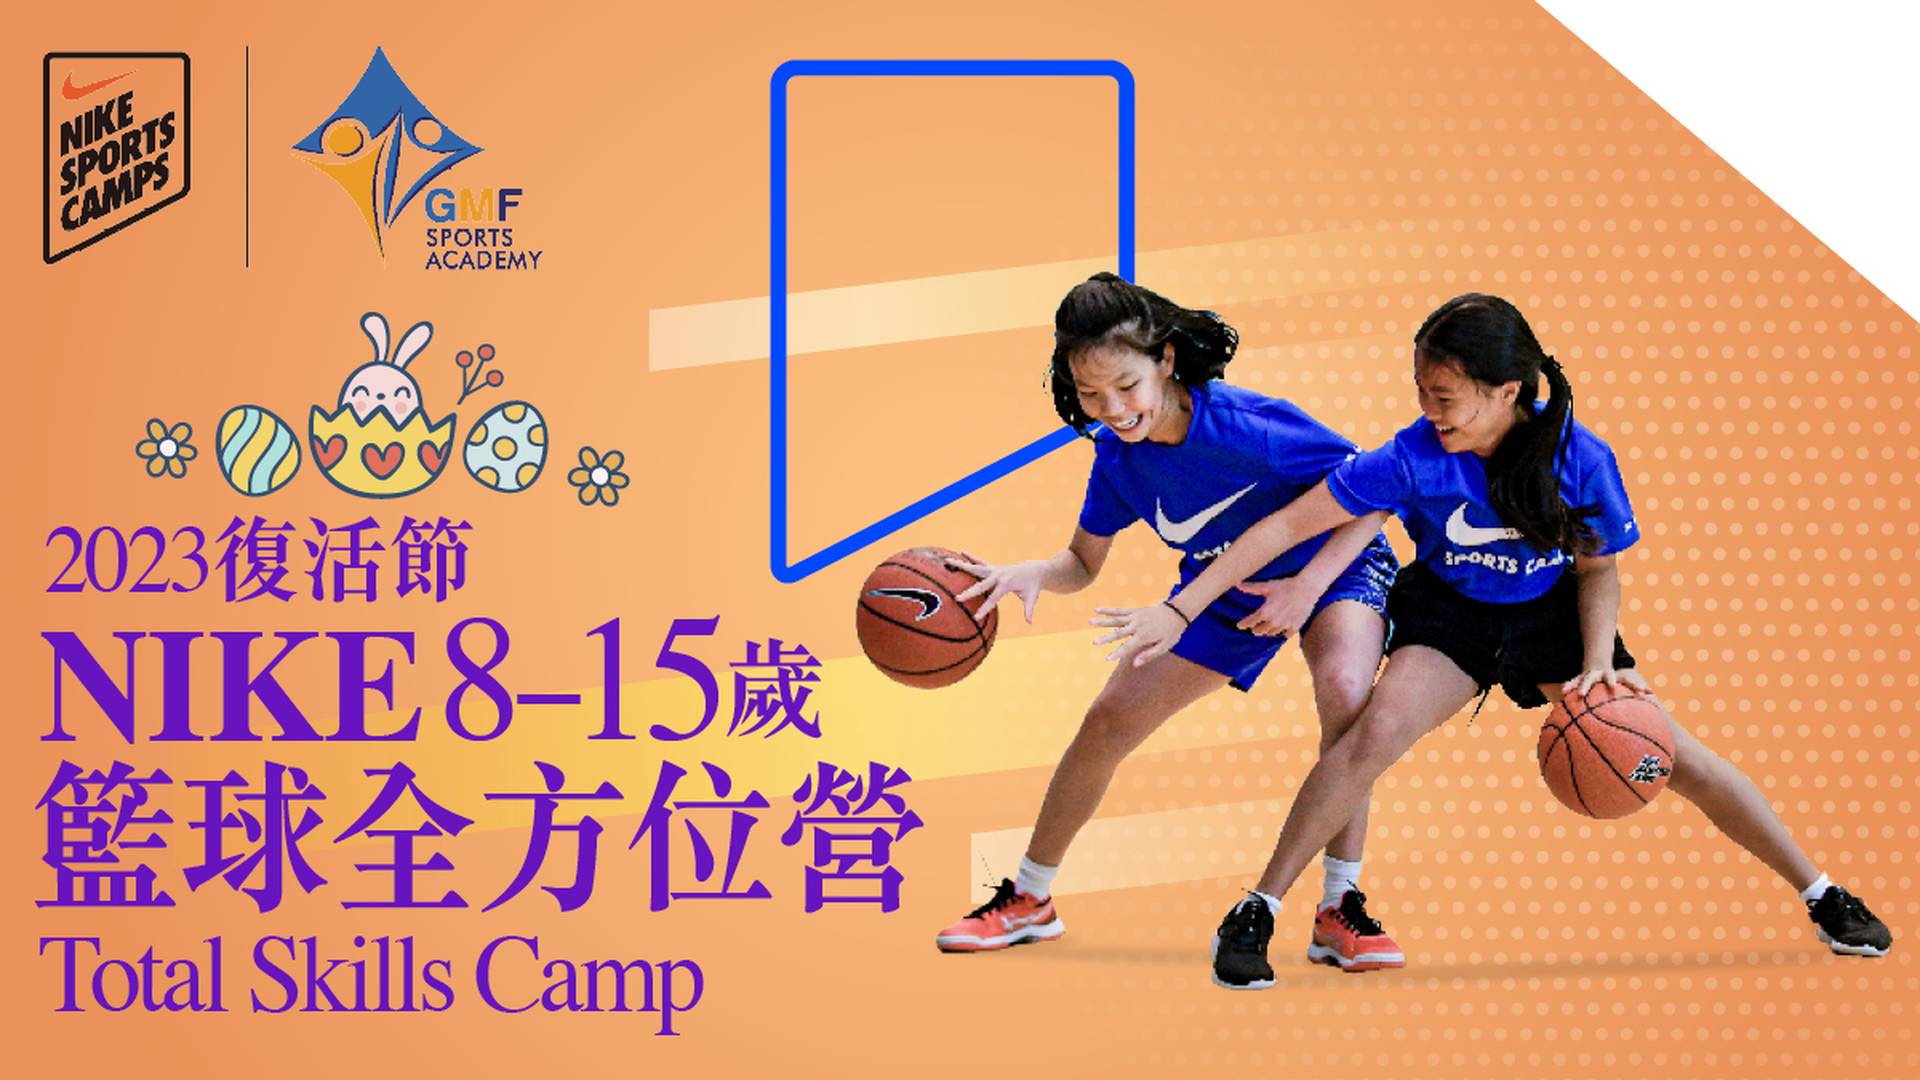 Nike Total Skills Camp 復活節NIKE籃球全方位營 2023 (8 - 15 歲)